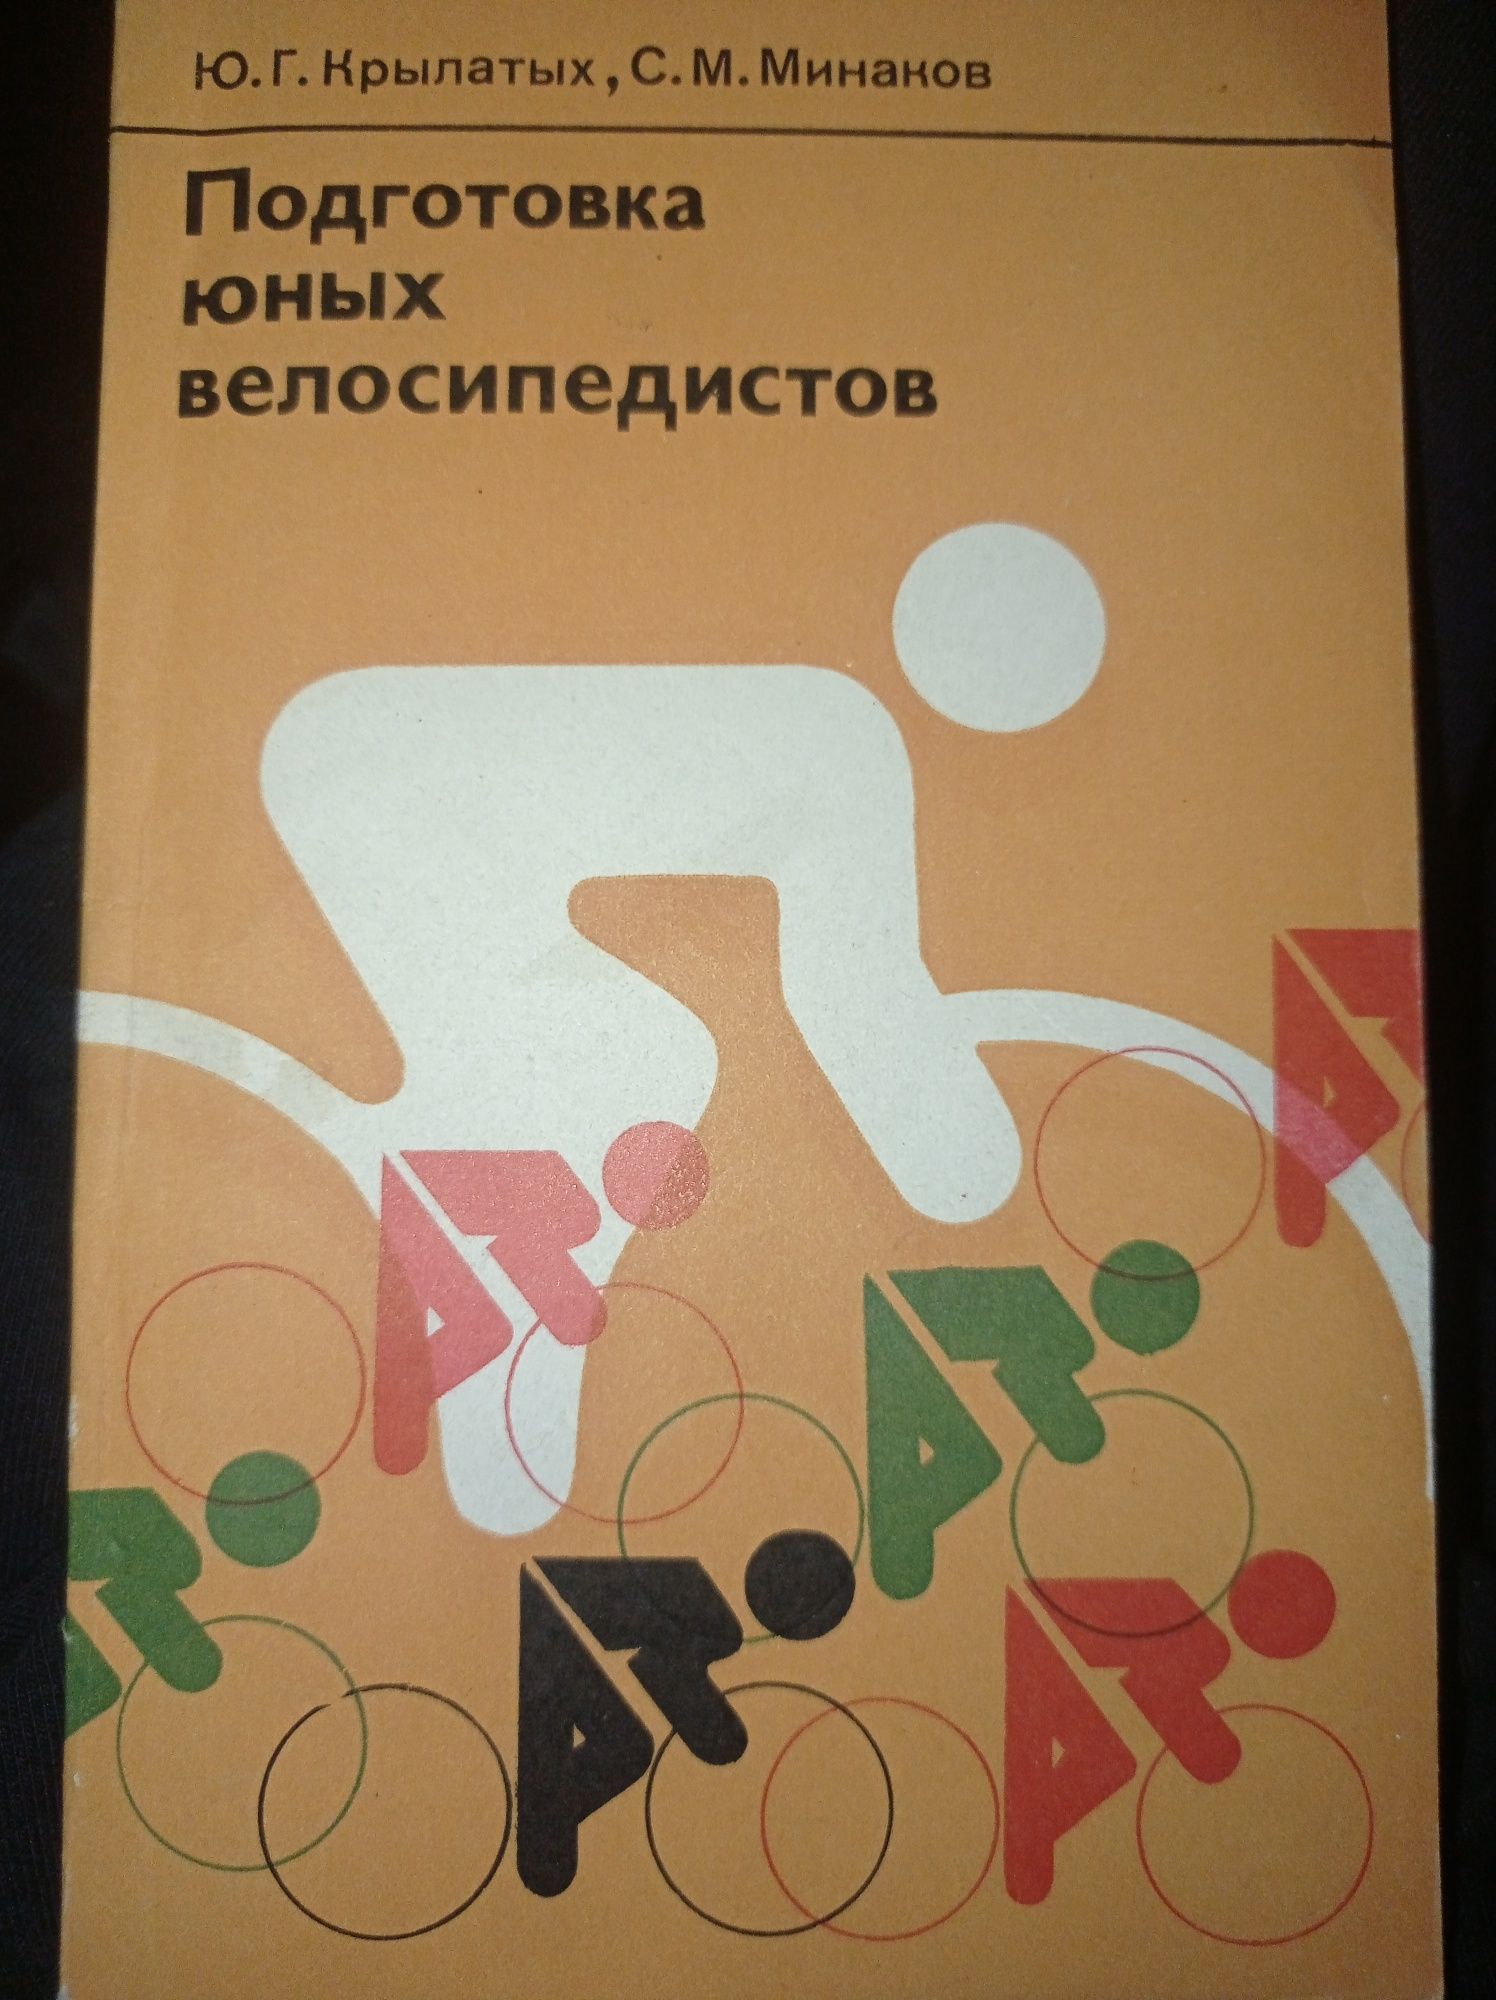 Книга  "Подготовка юных велосипедистов"